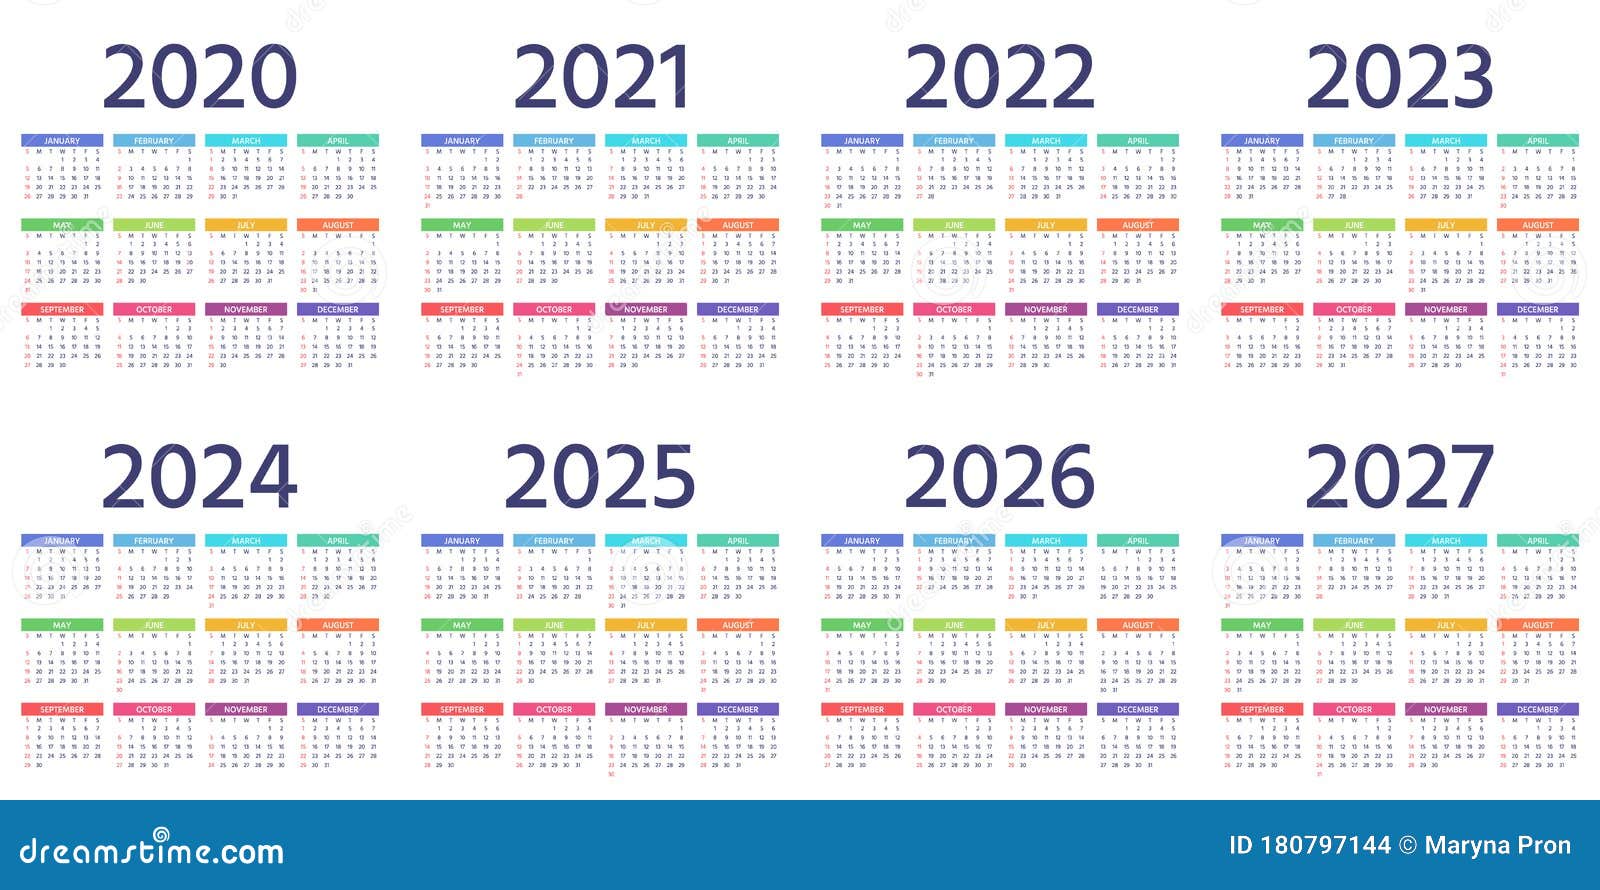 Календарь 2022 2023 2024. Календарь 2023 2024 2025 2026. Календарь 2021-2022 год. Календарь 2021-2023 года.